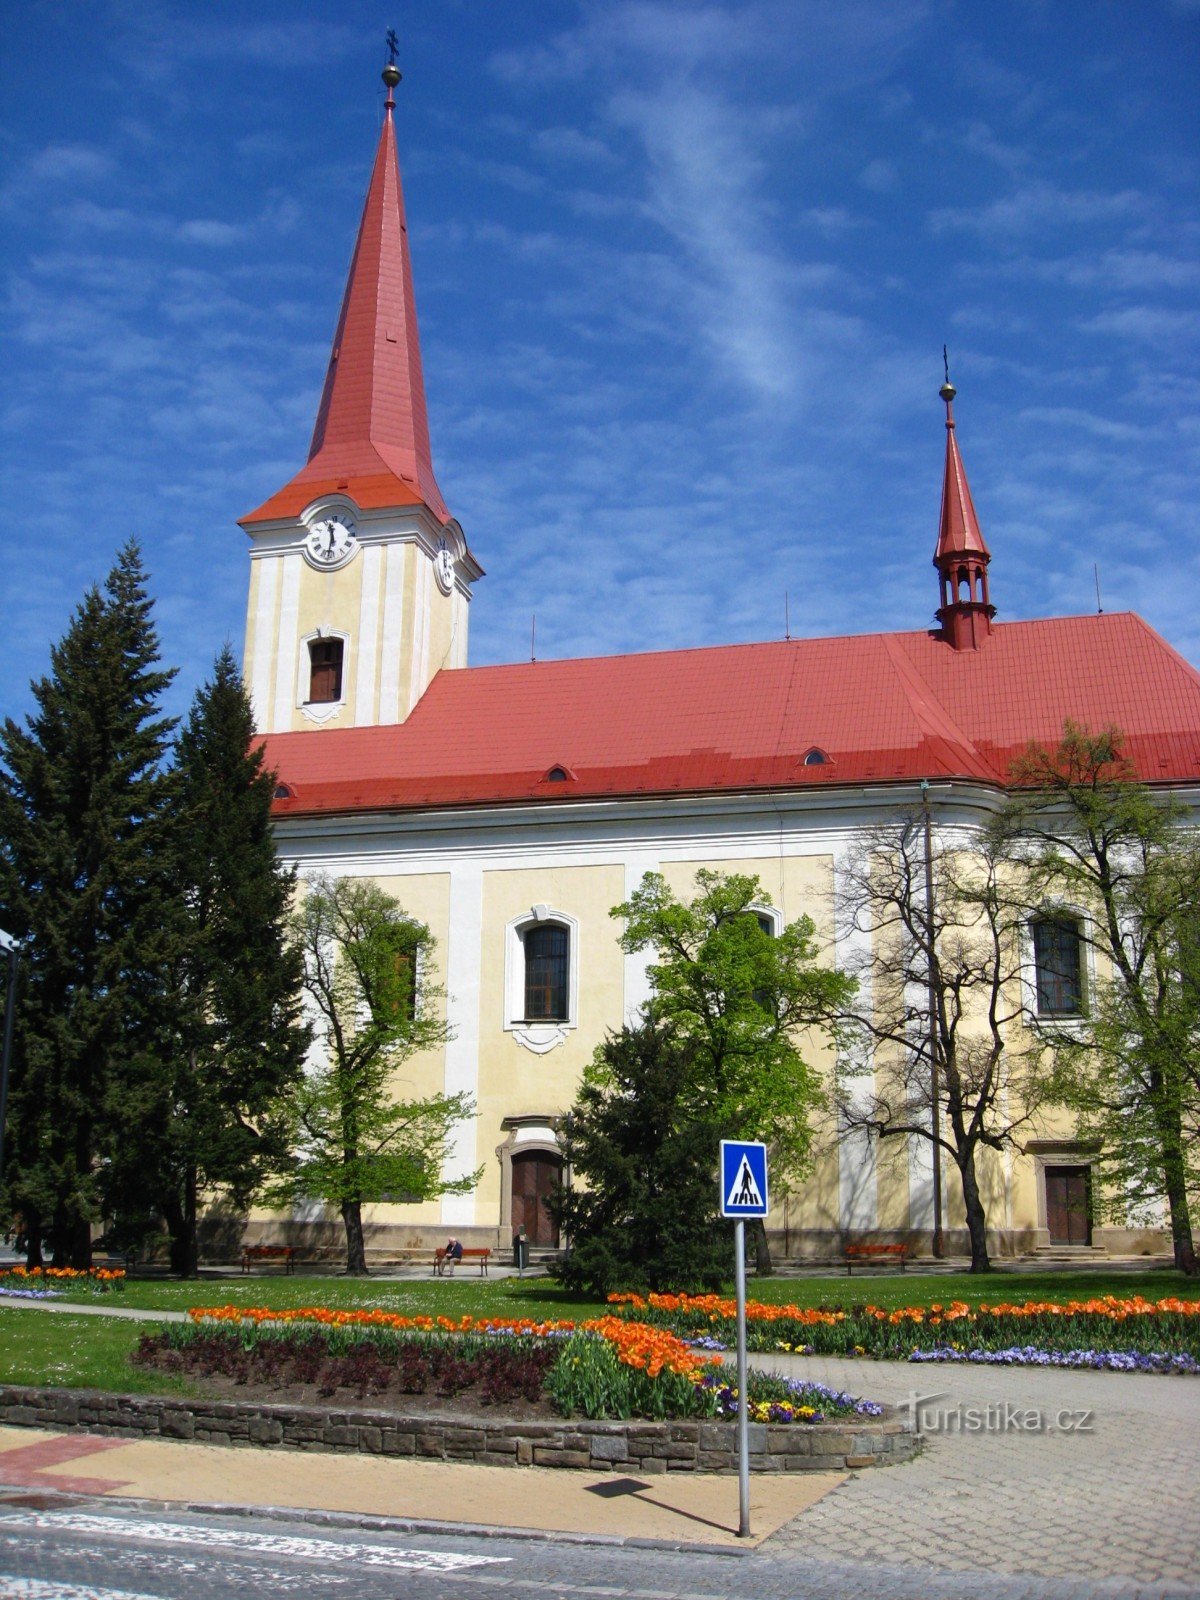 Церковь св. Лили